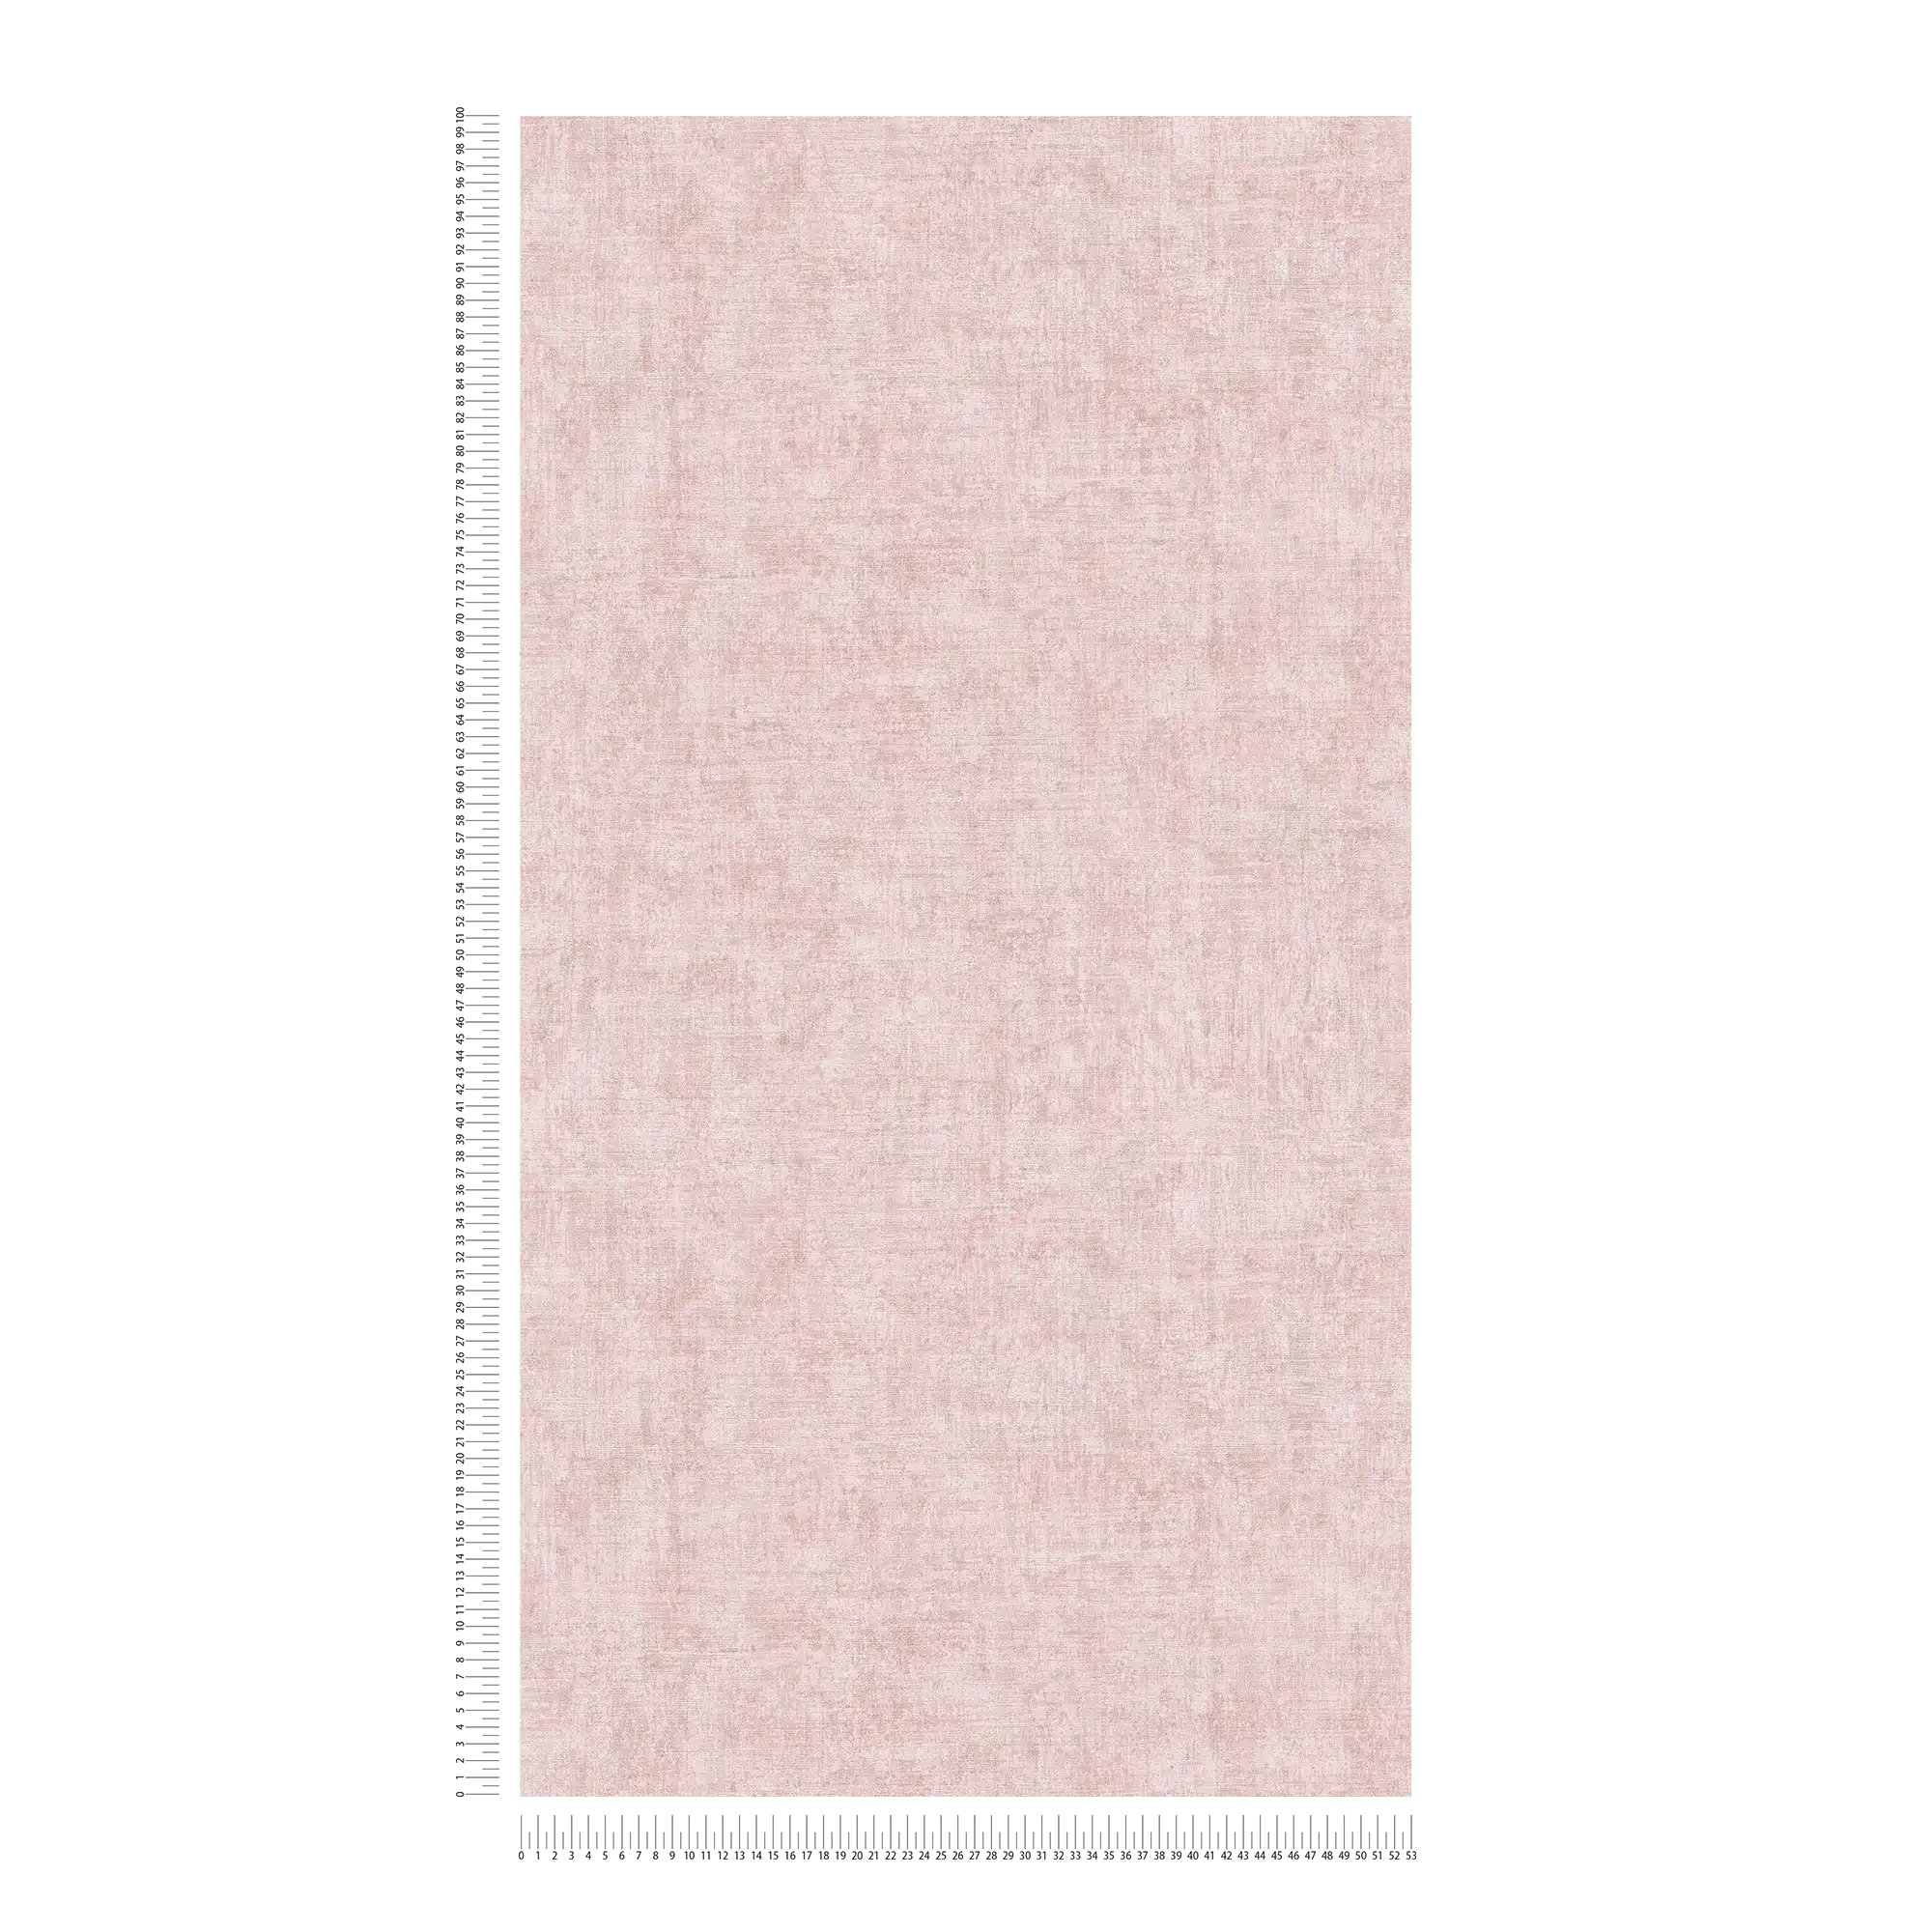             Papier peint intissé uni, chiné, motif structuré - rose
        